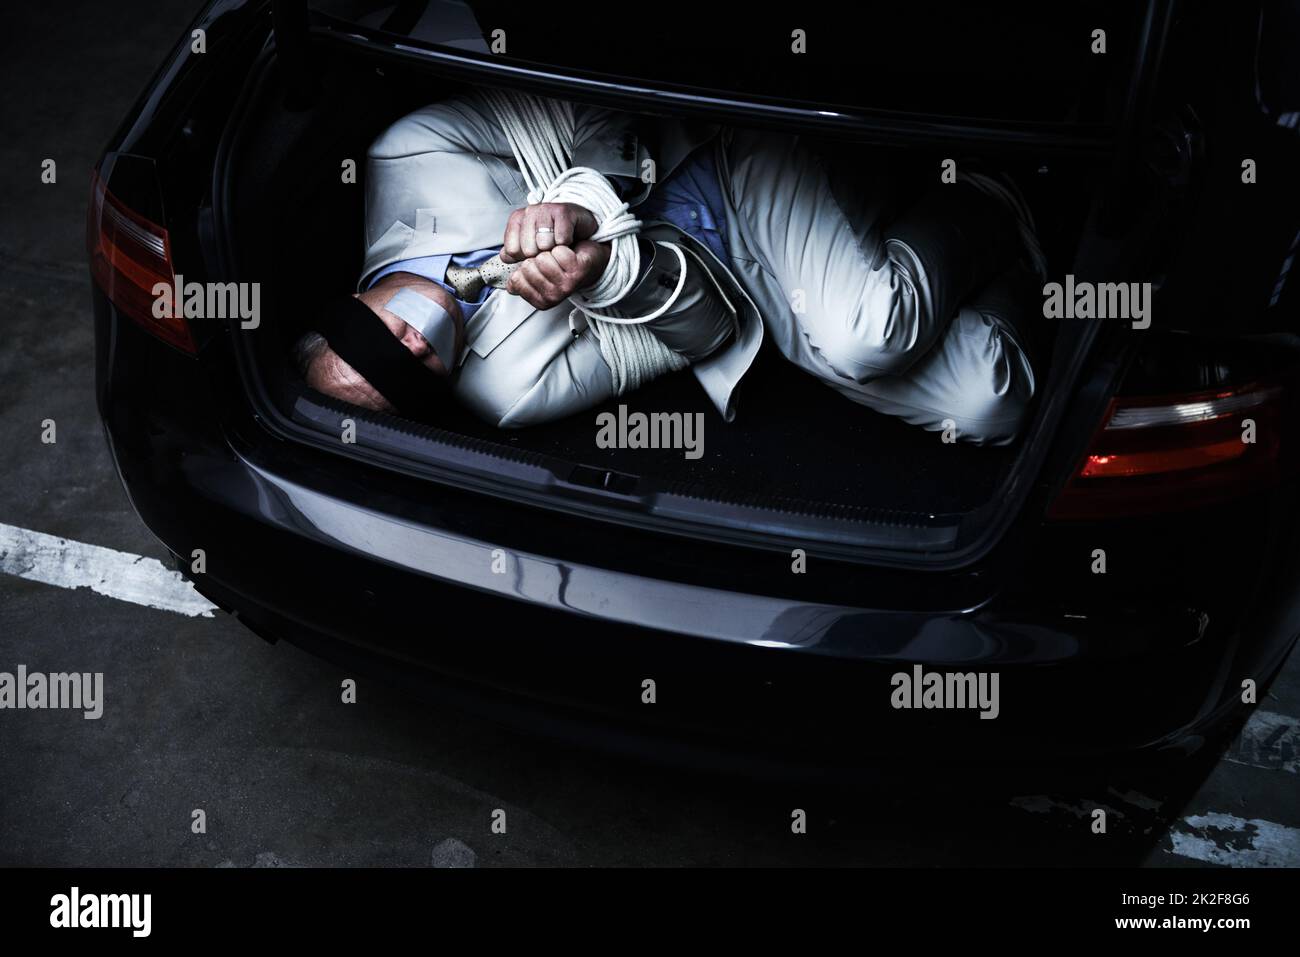 Hoffnung auf ein Wunder. Ein gebundener und mit verbundenen Augen im Kofferraum eines Autos liegender Geschäftsmann. Stockfoto